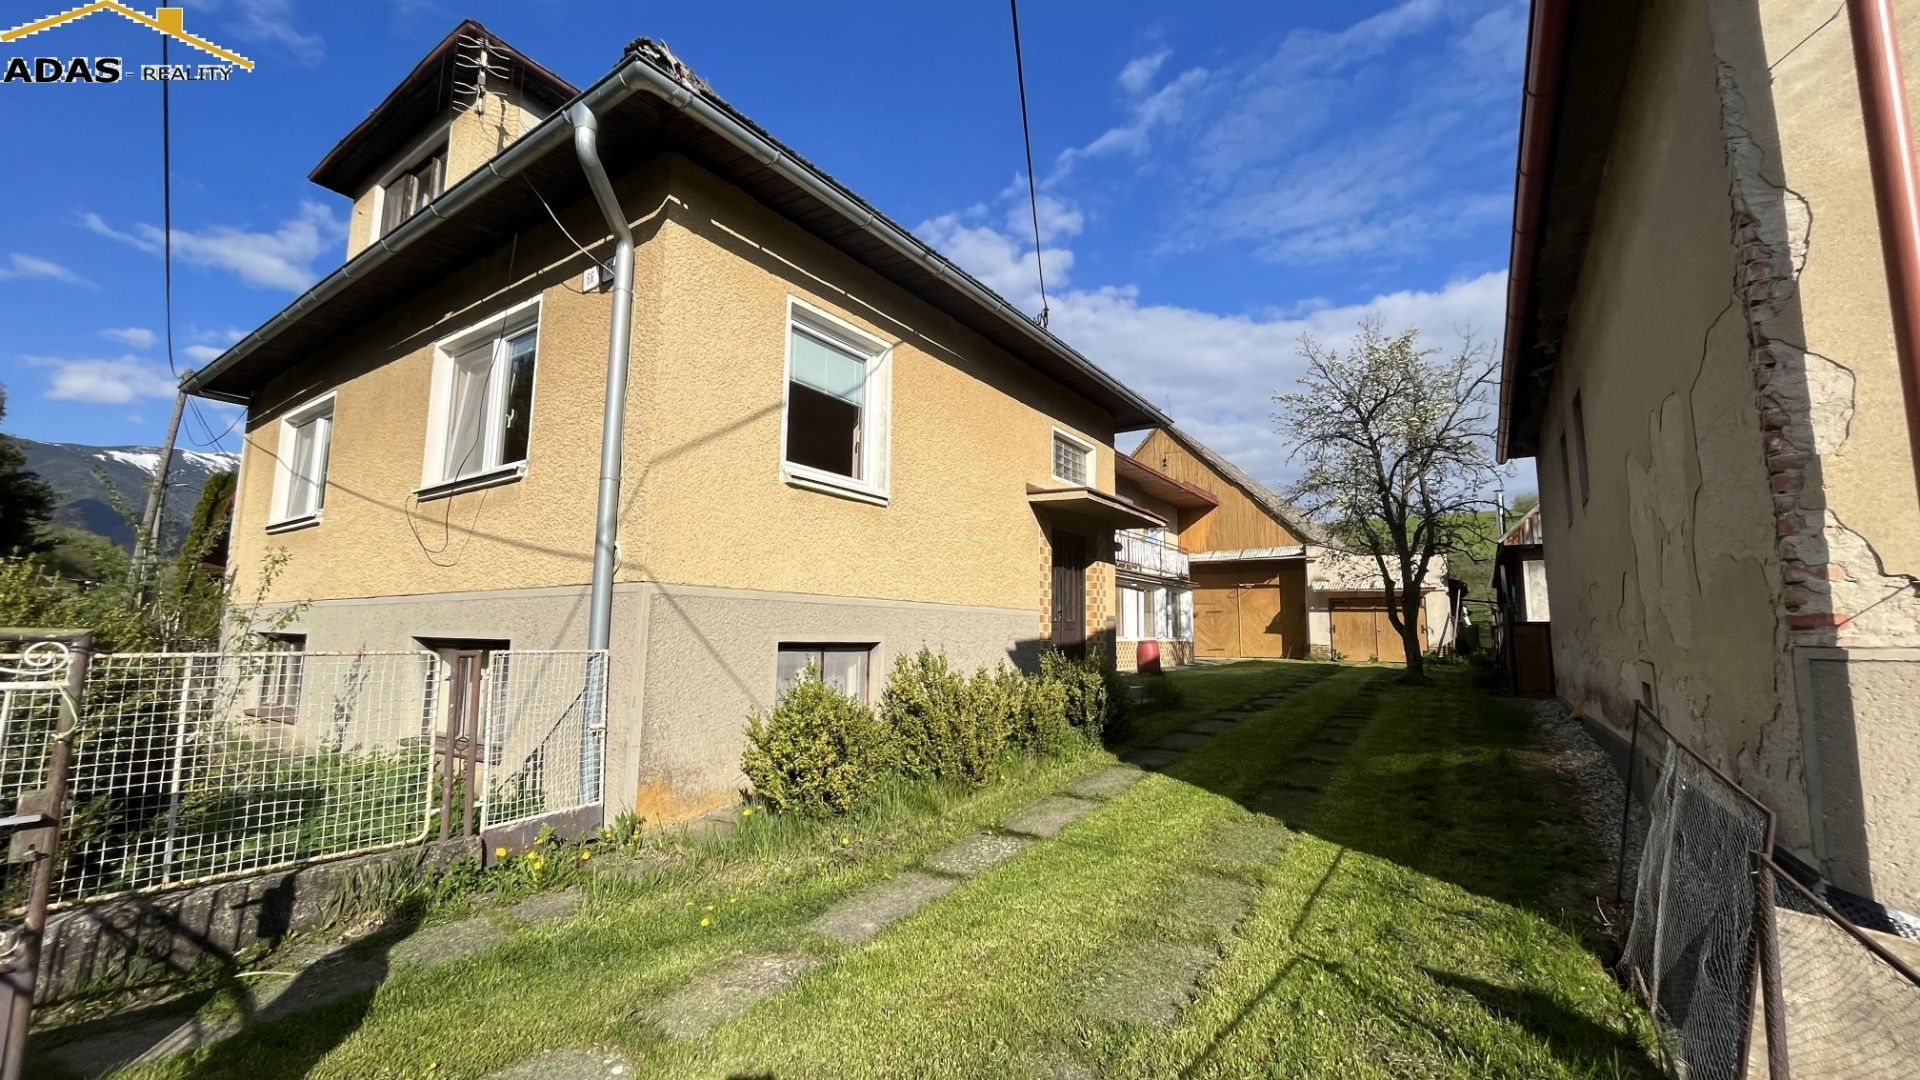 Ponúkame vám na predaj rodinný dom ktorý môže slúžiť aj ako víkendová chalupa. Nachádza sa  vo výbornej lokalite obce Bobrovček.